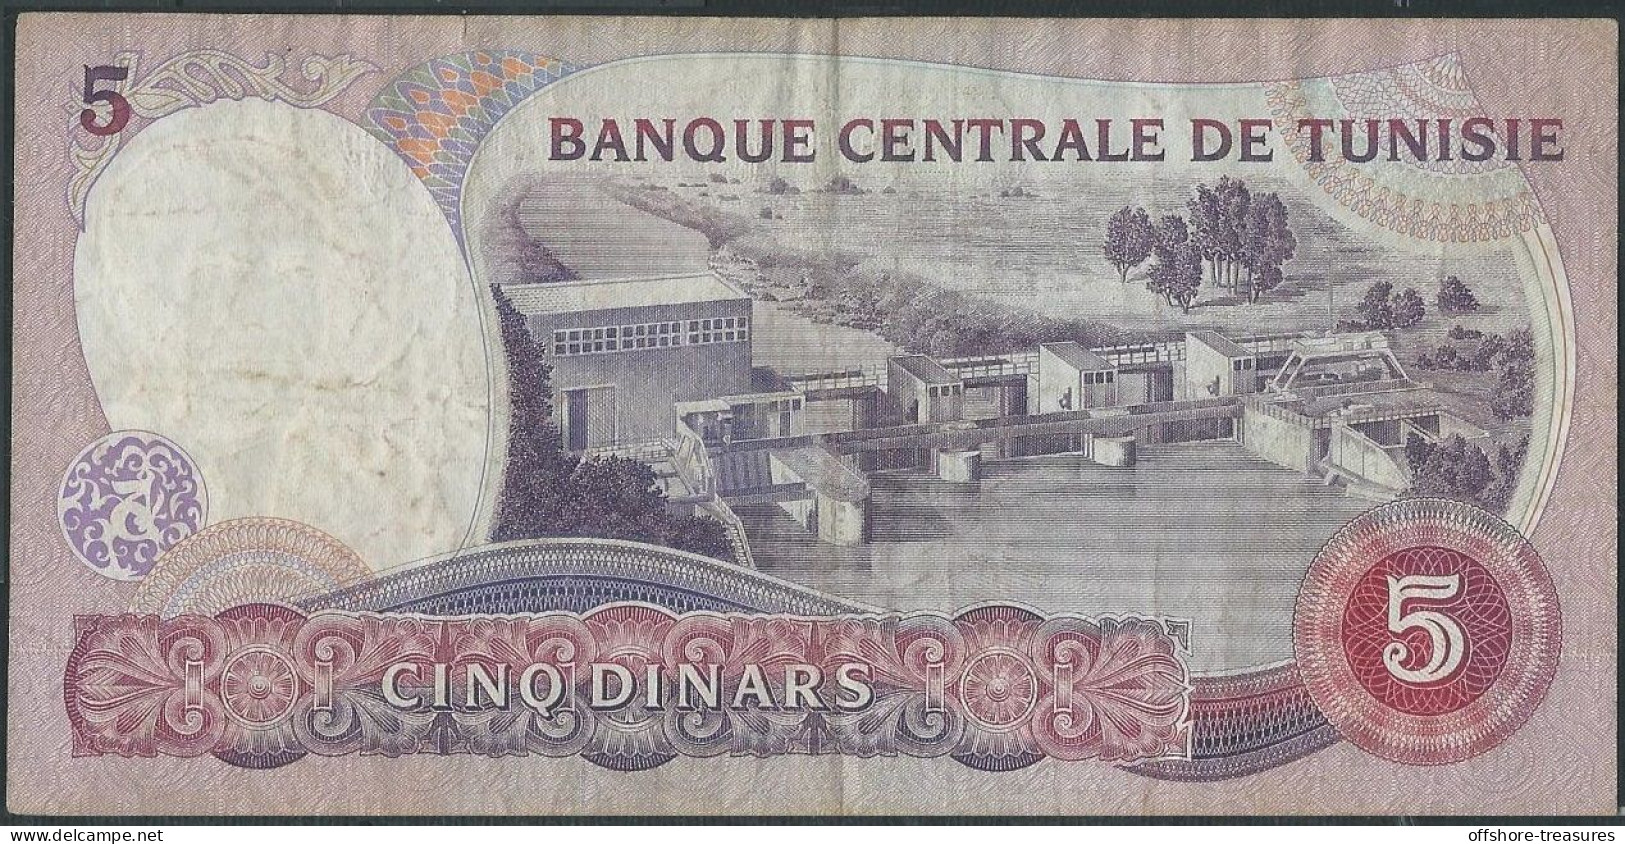 TUNISIA CENTRAL BANK 5 / DIX / TEN DINARS 1983 BANKNOTE Fine Grade - TUNIS - TUNISIE Billet - Tunisie